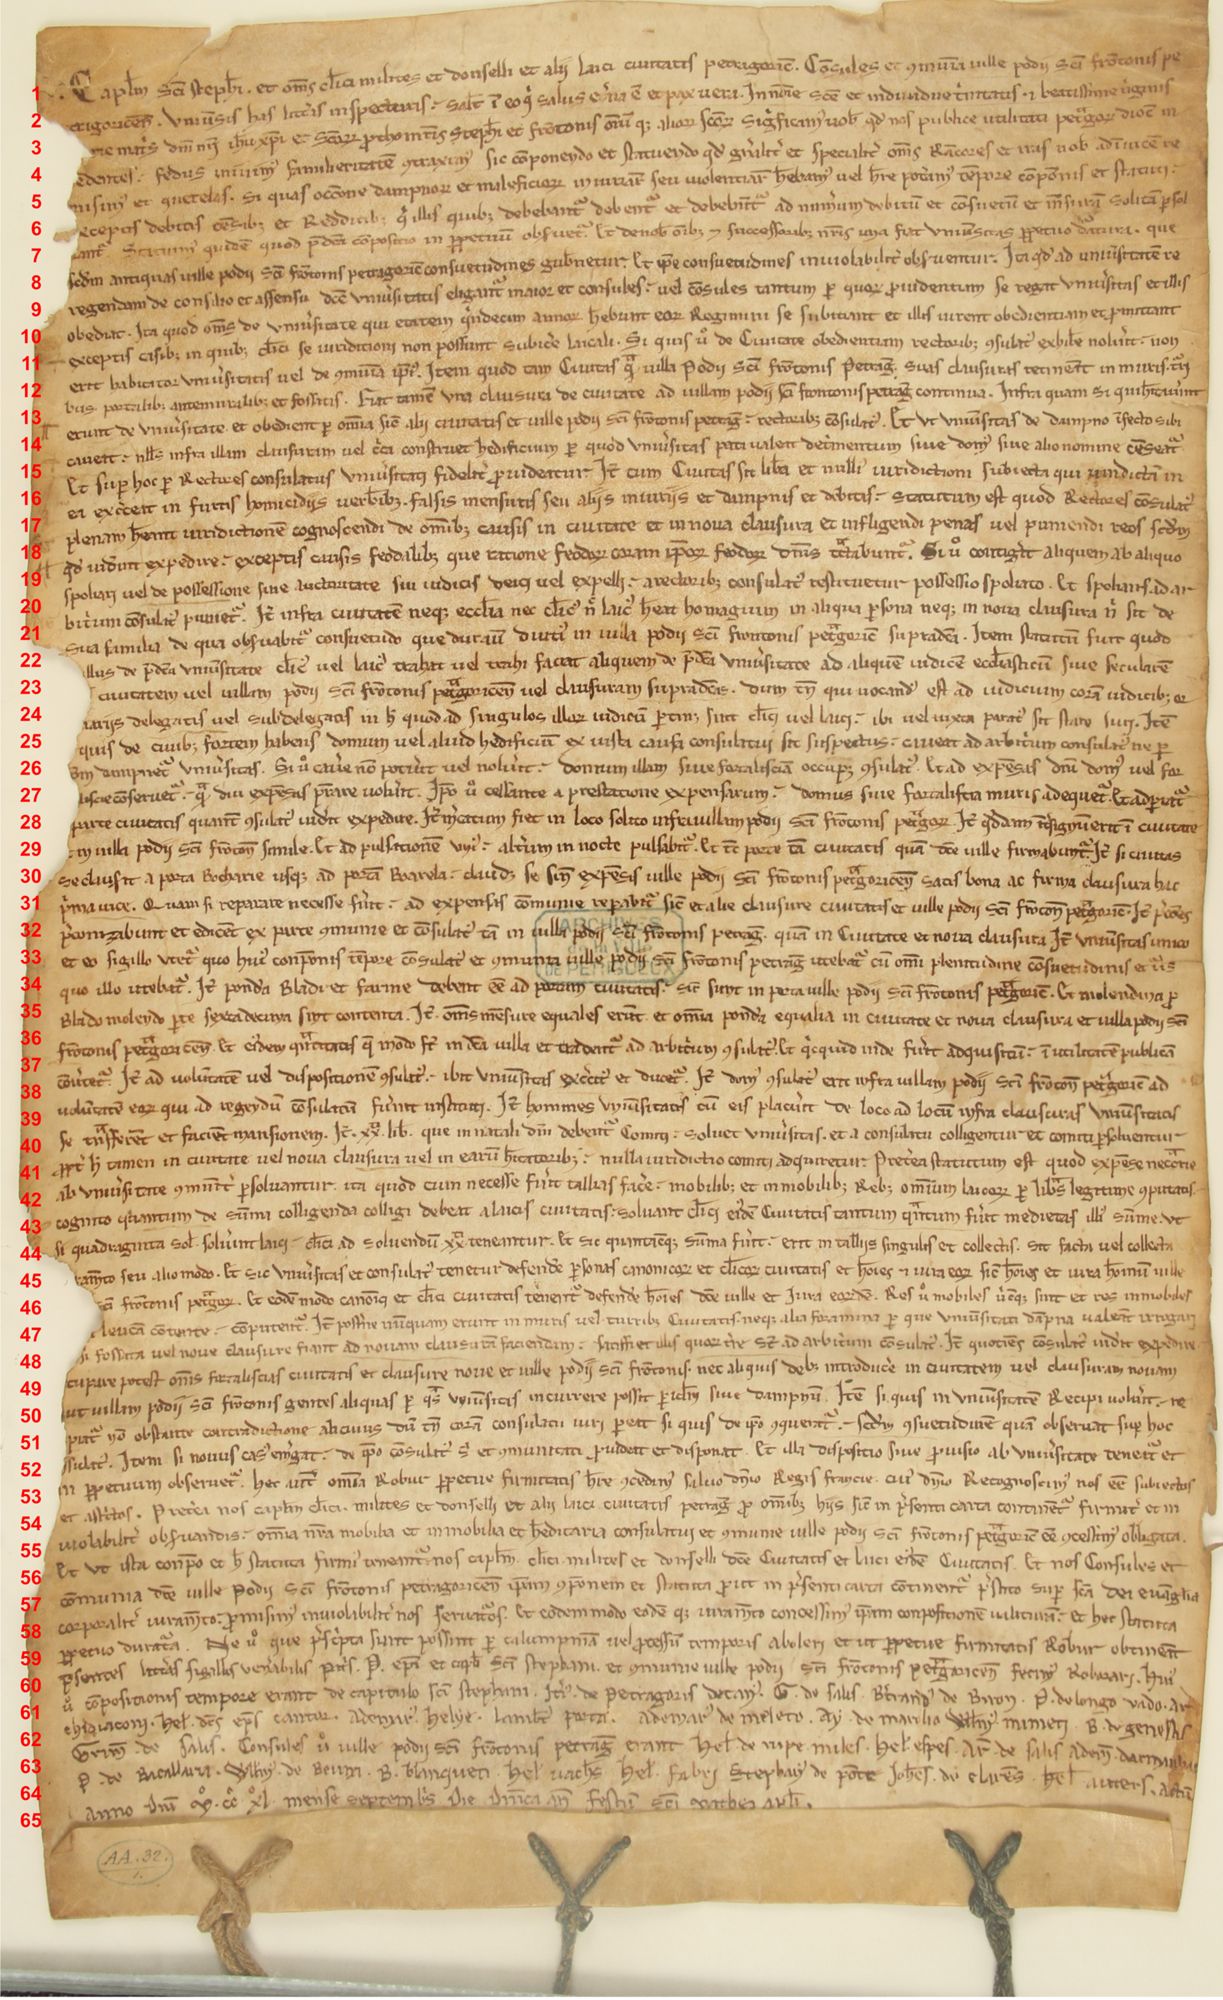 Traité d'union de la Cité et du Puy-Saint-Front de Périgueux, 1240 (latin) **